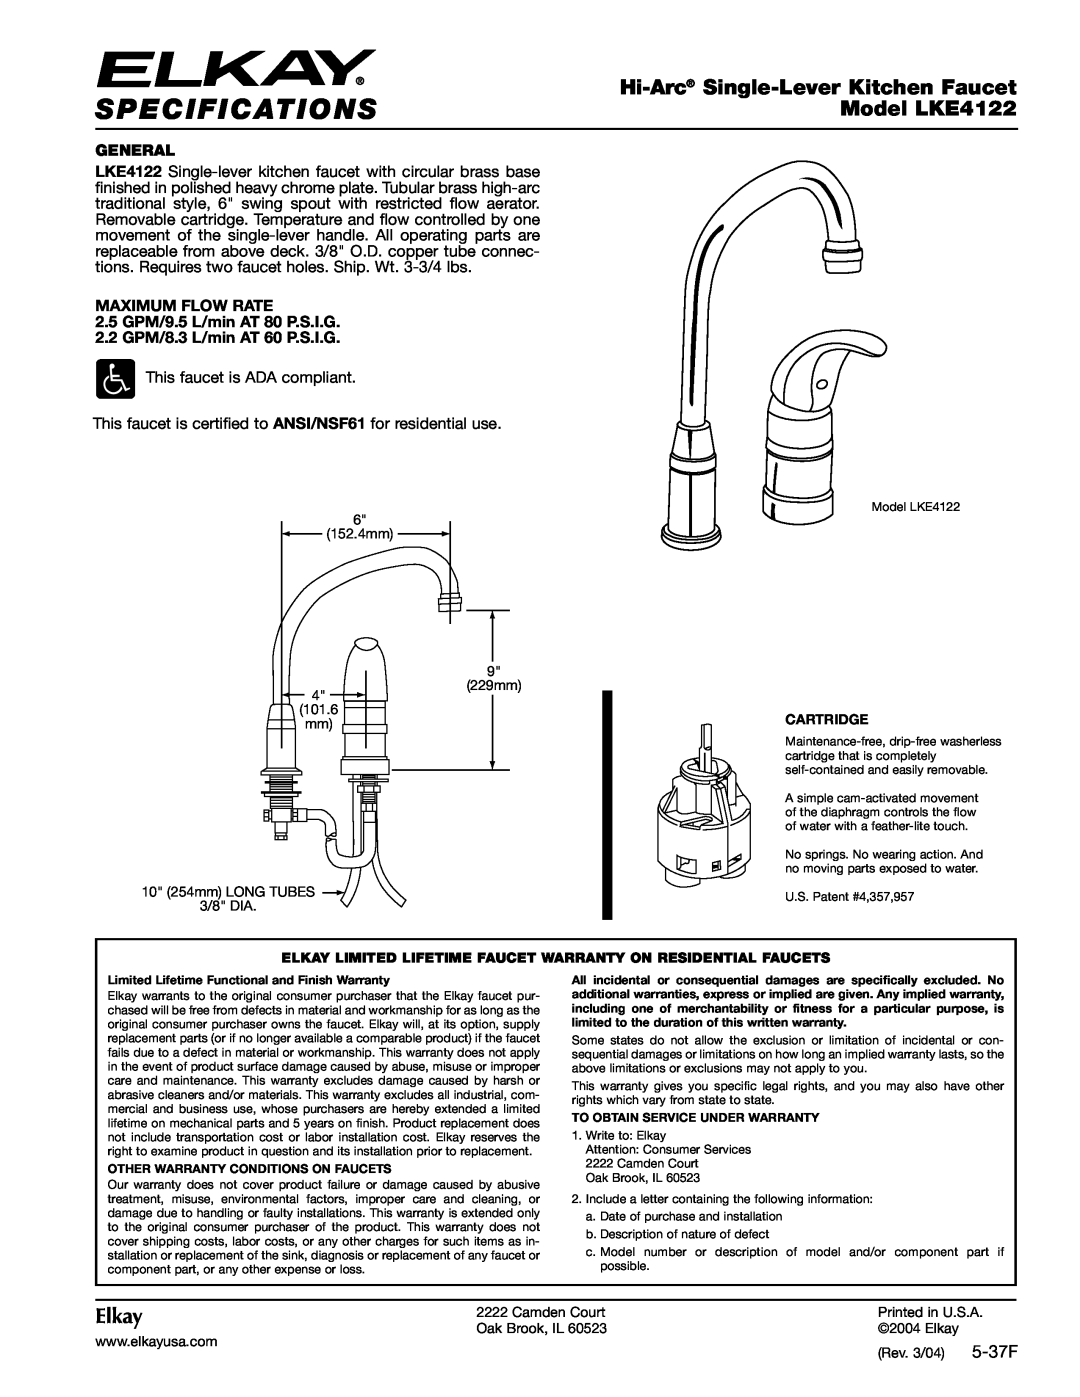 Elkay specifications Specifications, Hi-Arc Single-LeverKitchen Faucet, Model LKE4122, Elkay, 5-37F, General, Cartridge 